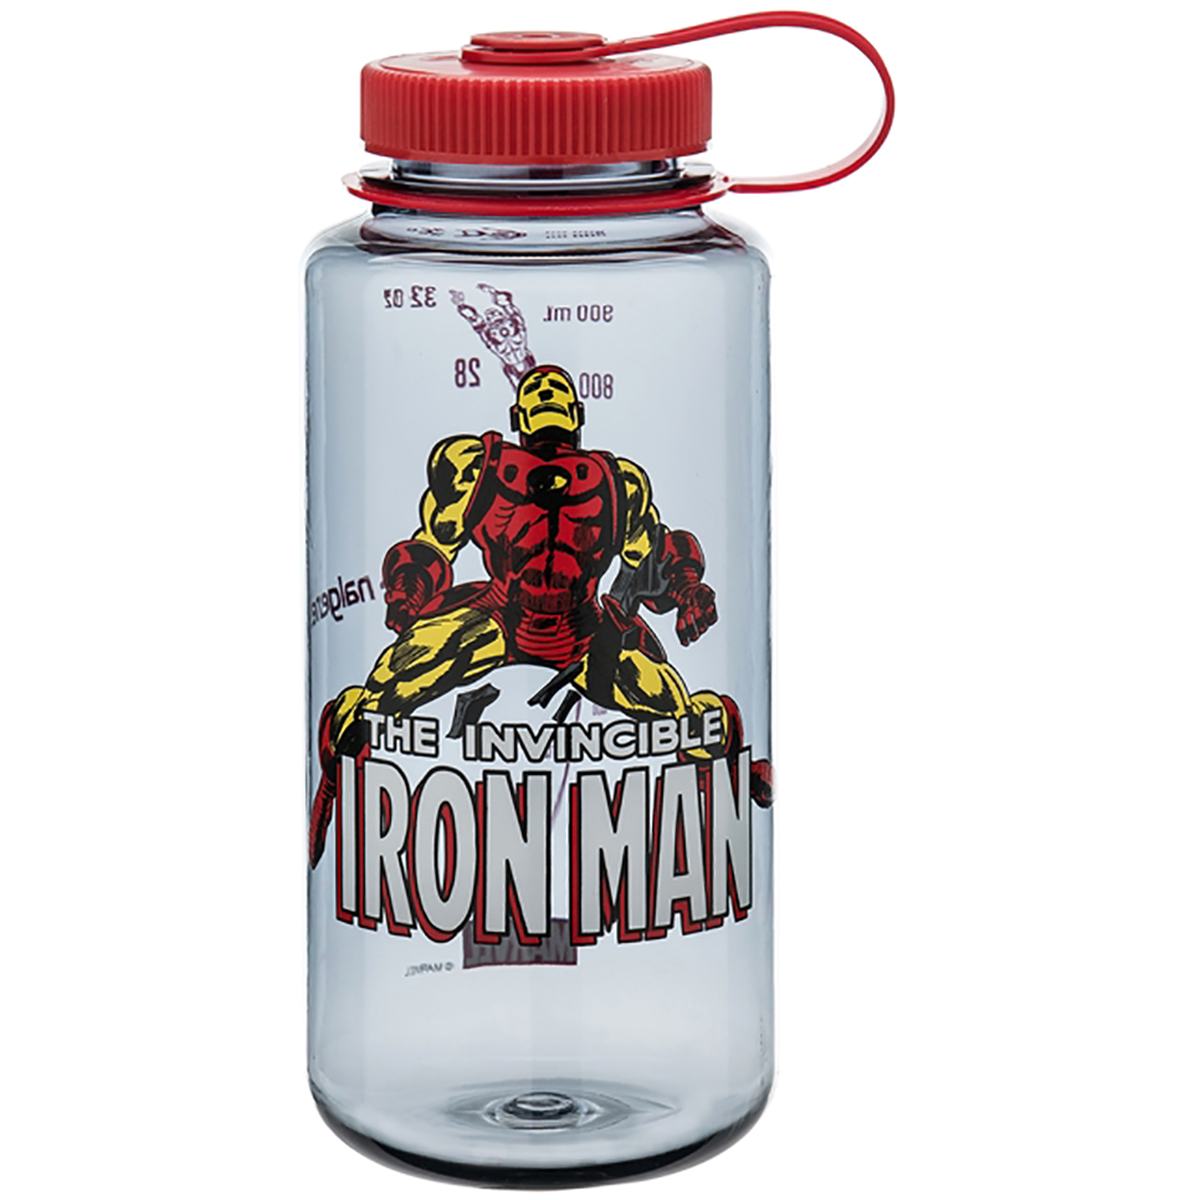 Nalgene Marvel Tritan Wide Mouth Water Bottle - 32 oz. - Hulk Glow